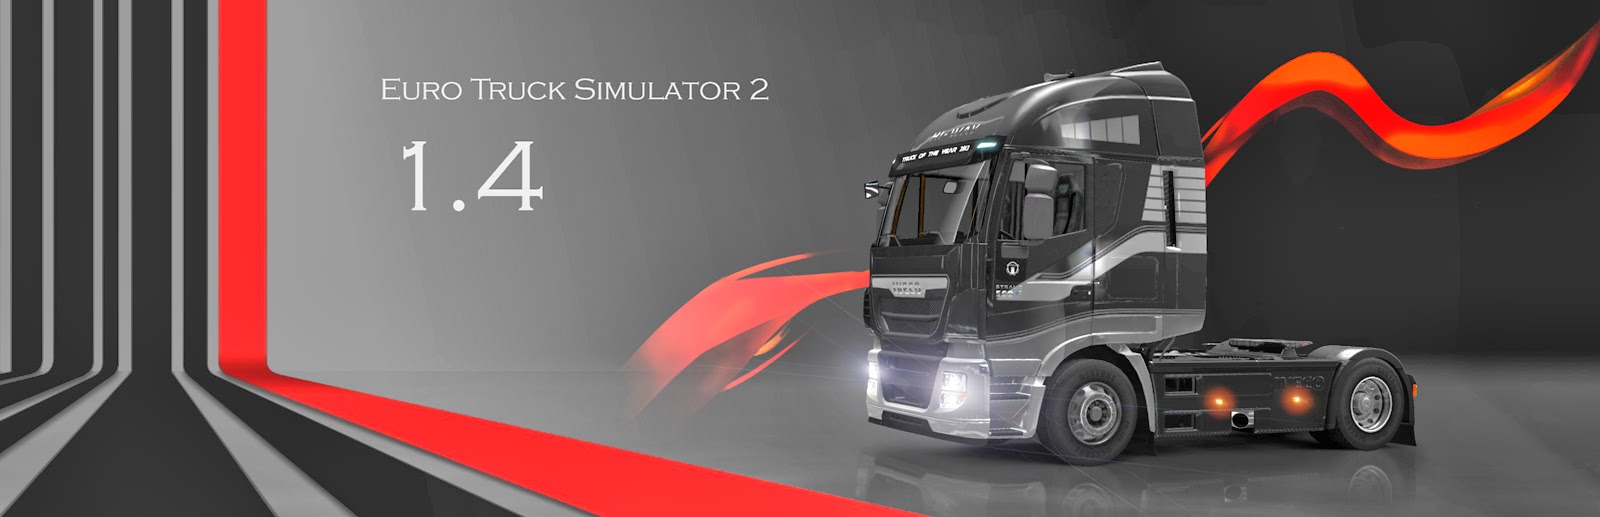 ets2 1.4.1 sürümü,ets2 sürümler,ets2 sürüm yükseltme,euro truck simulator 2 1.4.1 sürümü